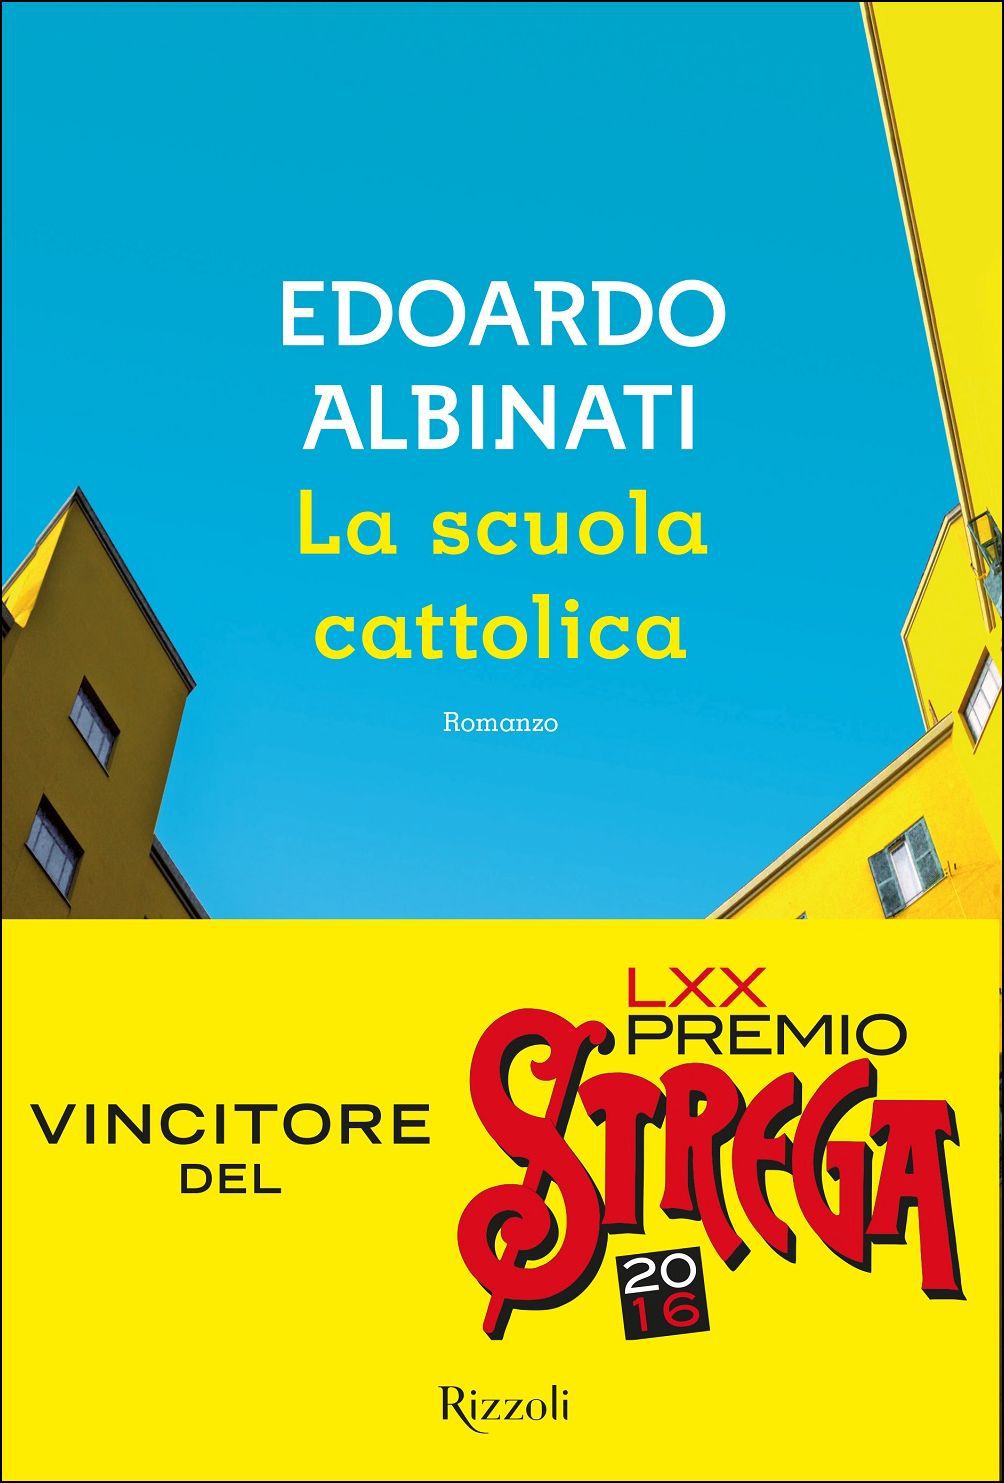 Recensione de La Scuola Cattolica – Edoardo Albinati